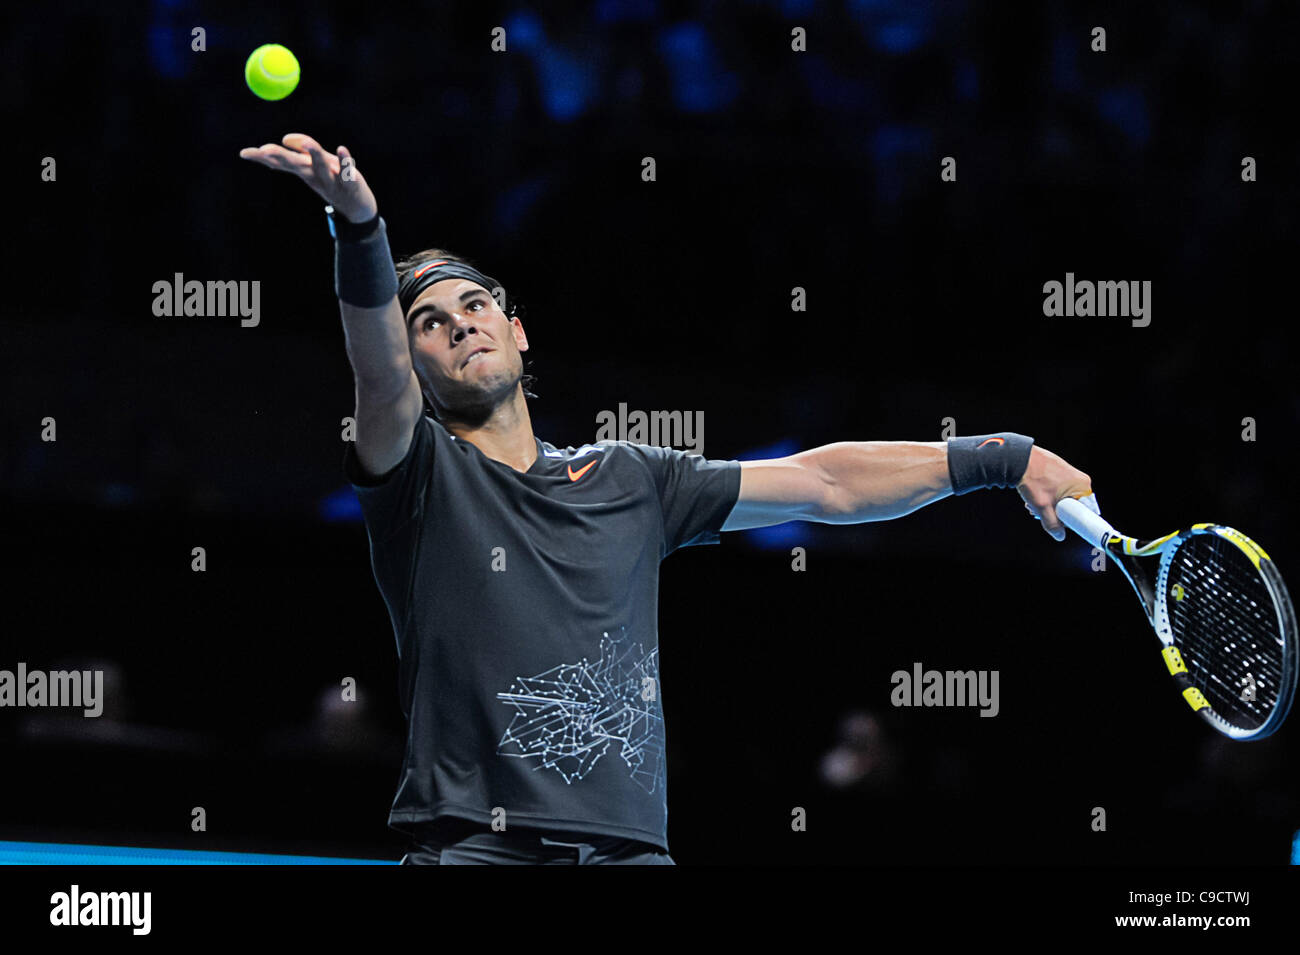 22.11.2011 London, England Rafael Nadal aus Spanien während seine Singles match Round-Robin gegen Roger Federer der Schweiz am Tennis Barclays ATP World Tour Finals 2011 in der 02 Arena in London. Stockfoto